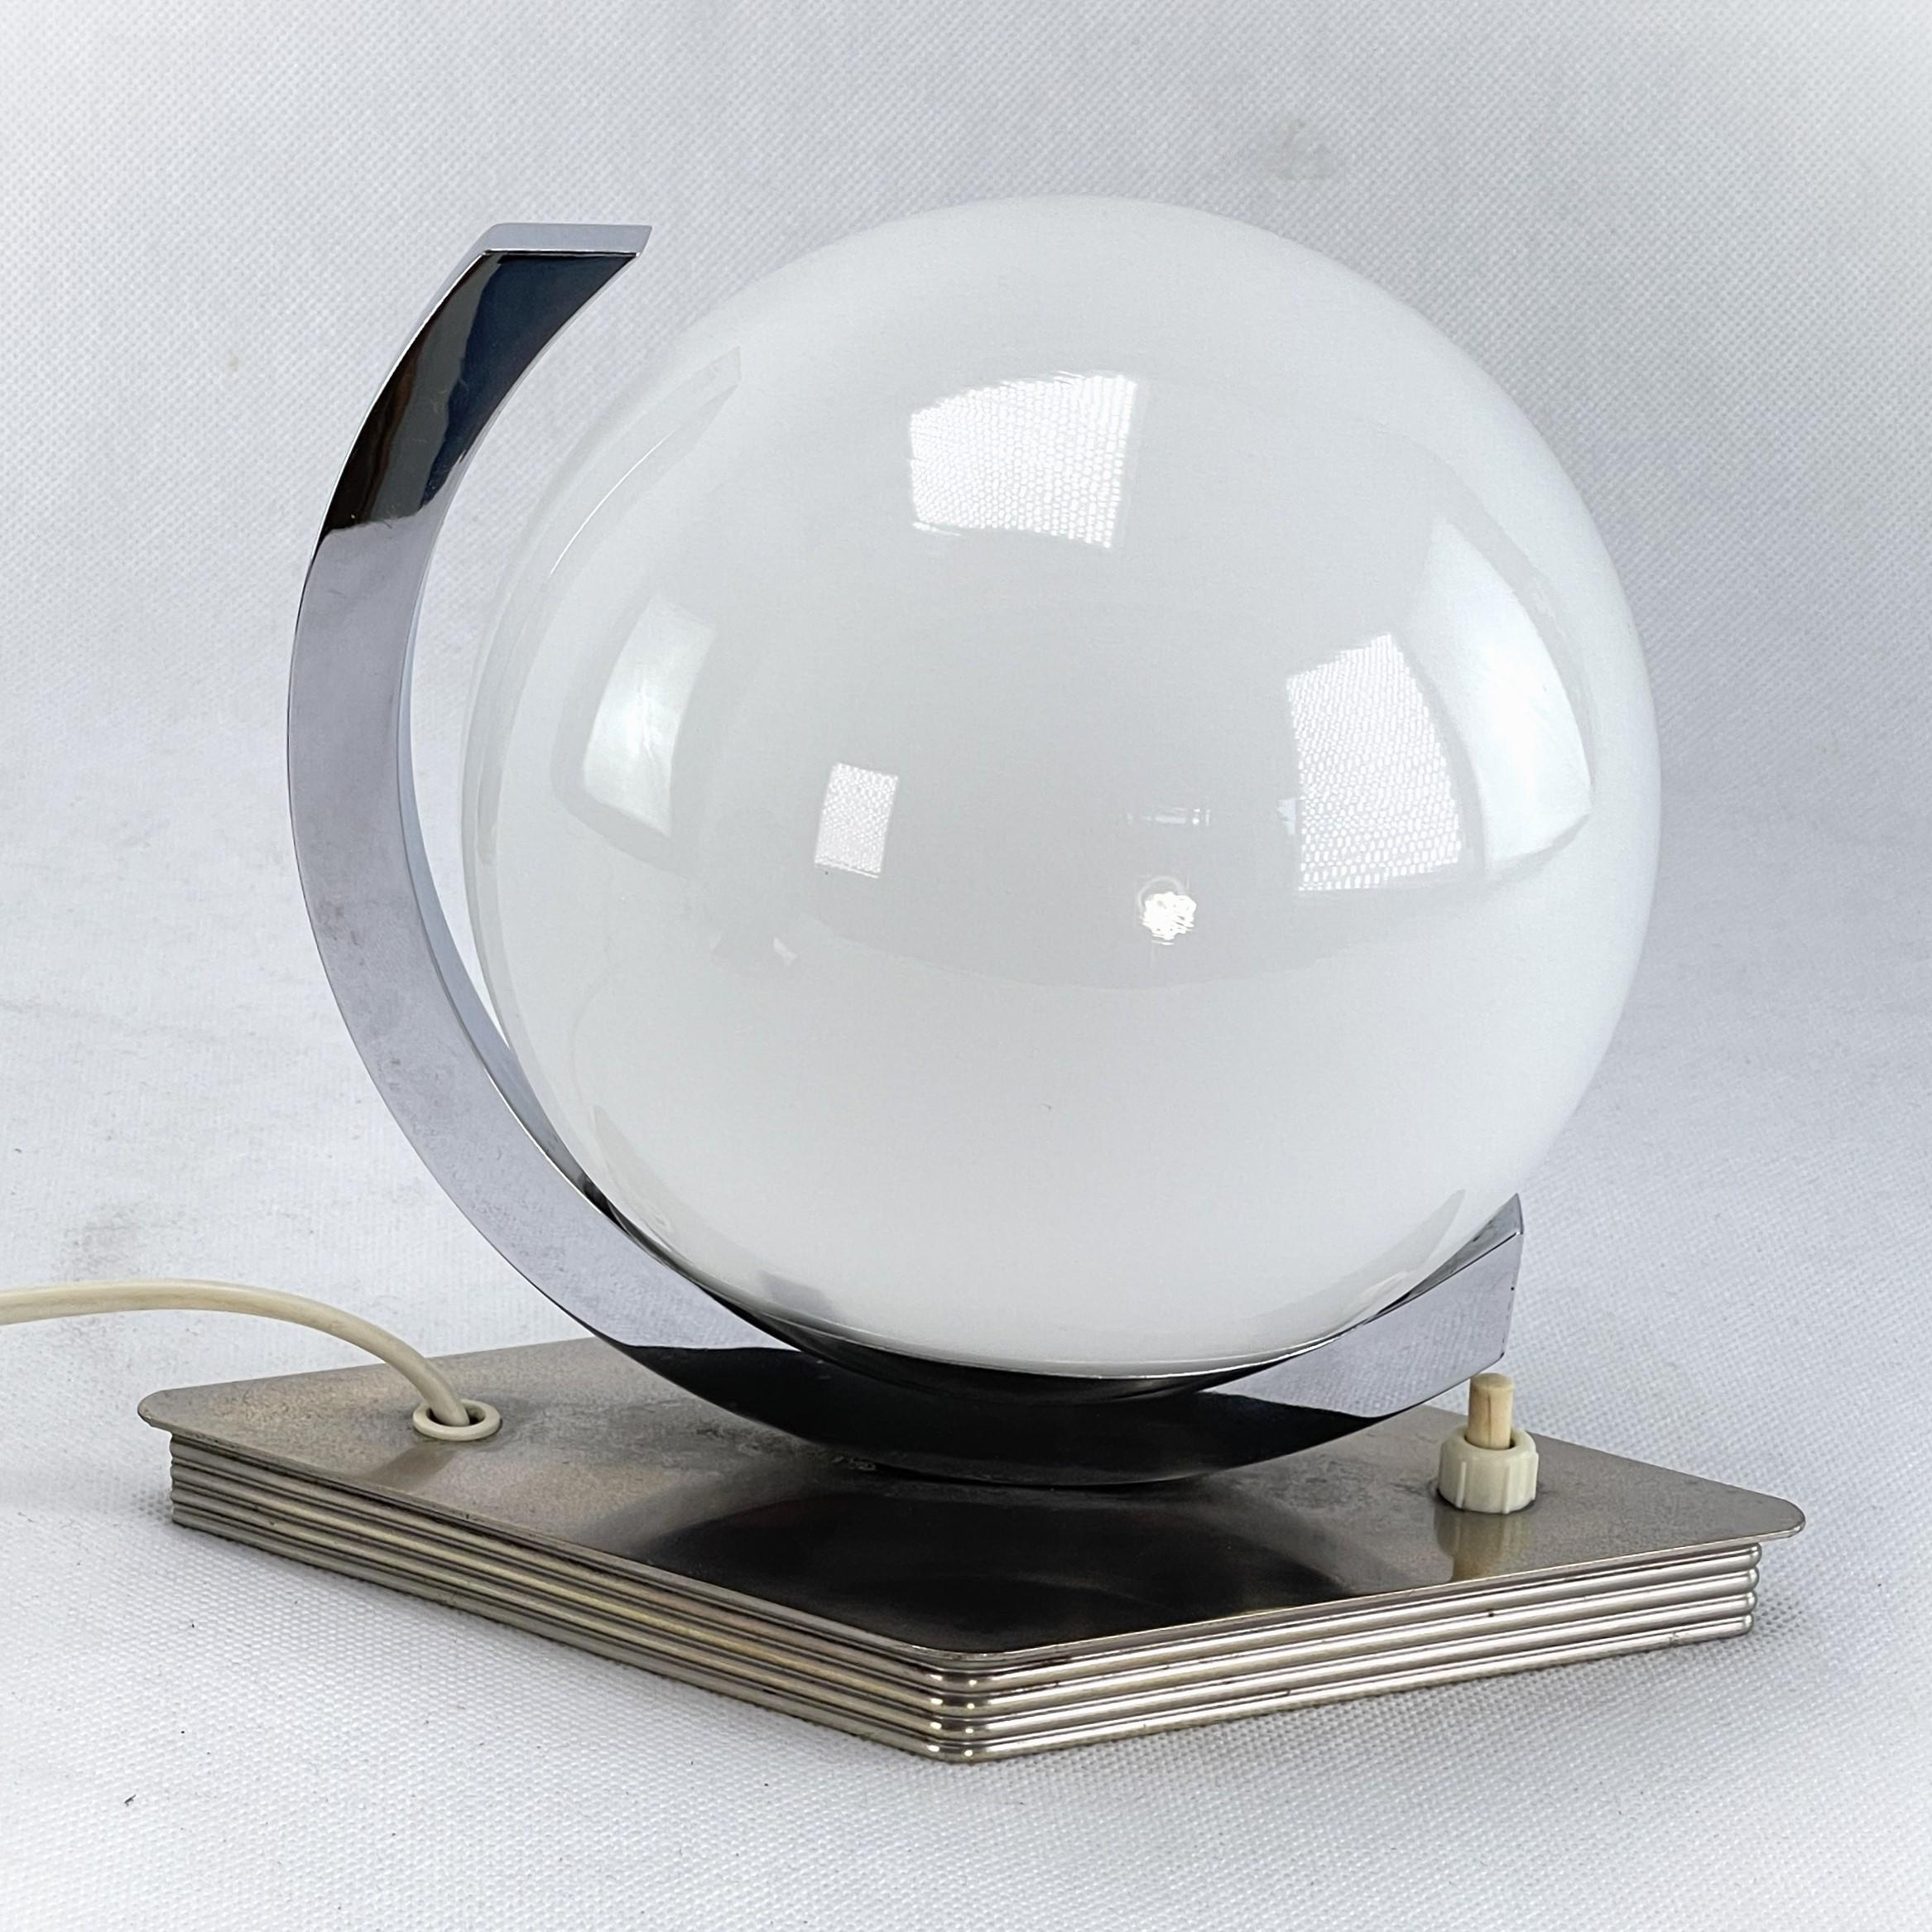 Lampe de table Art Déco - années 1940

Cette lampe à poser originale séduit par son design simple et fonctionnel.
La lampe donne une lumière très agréable. Cette lampe de table est un classique absolu du design de la période ART DECOS.

L'article